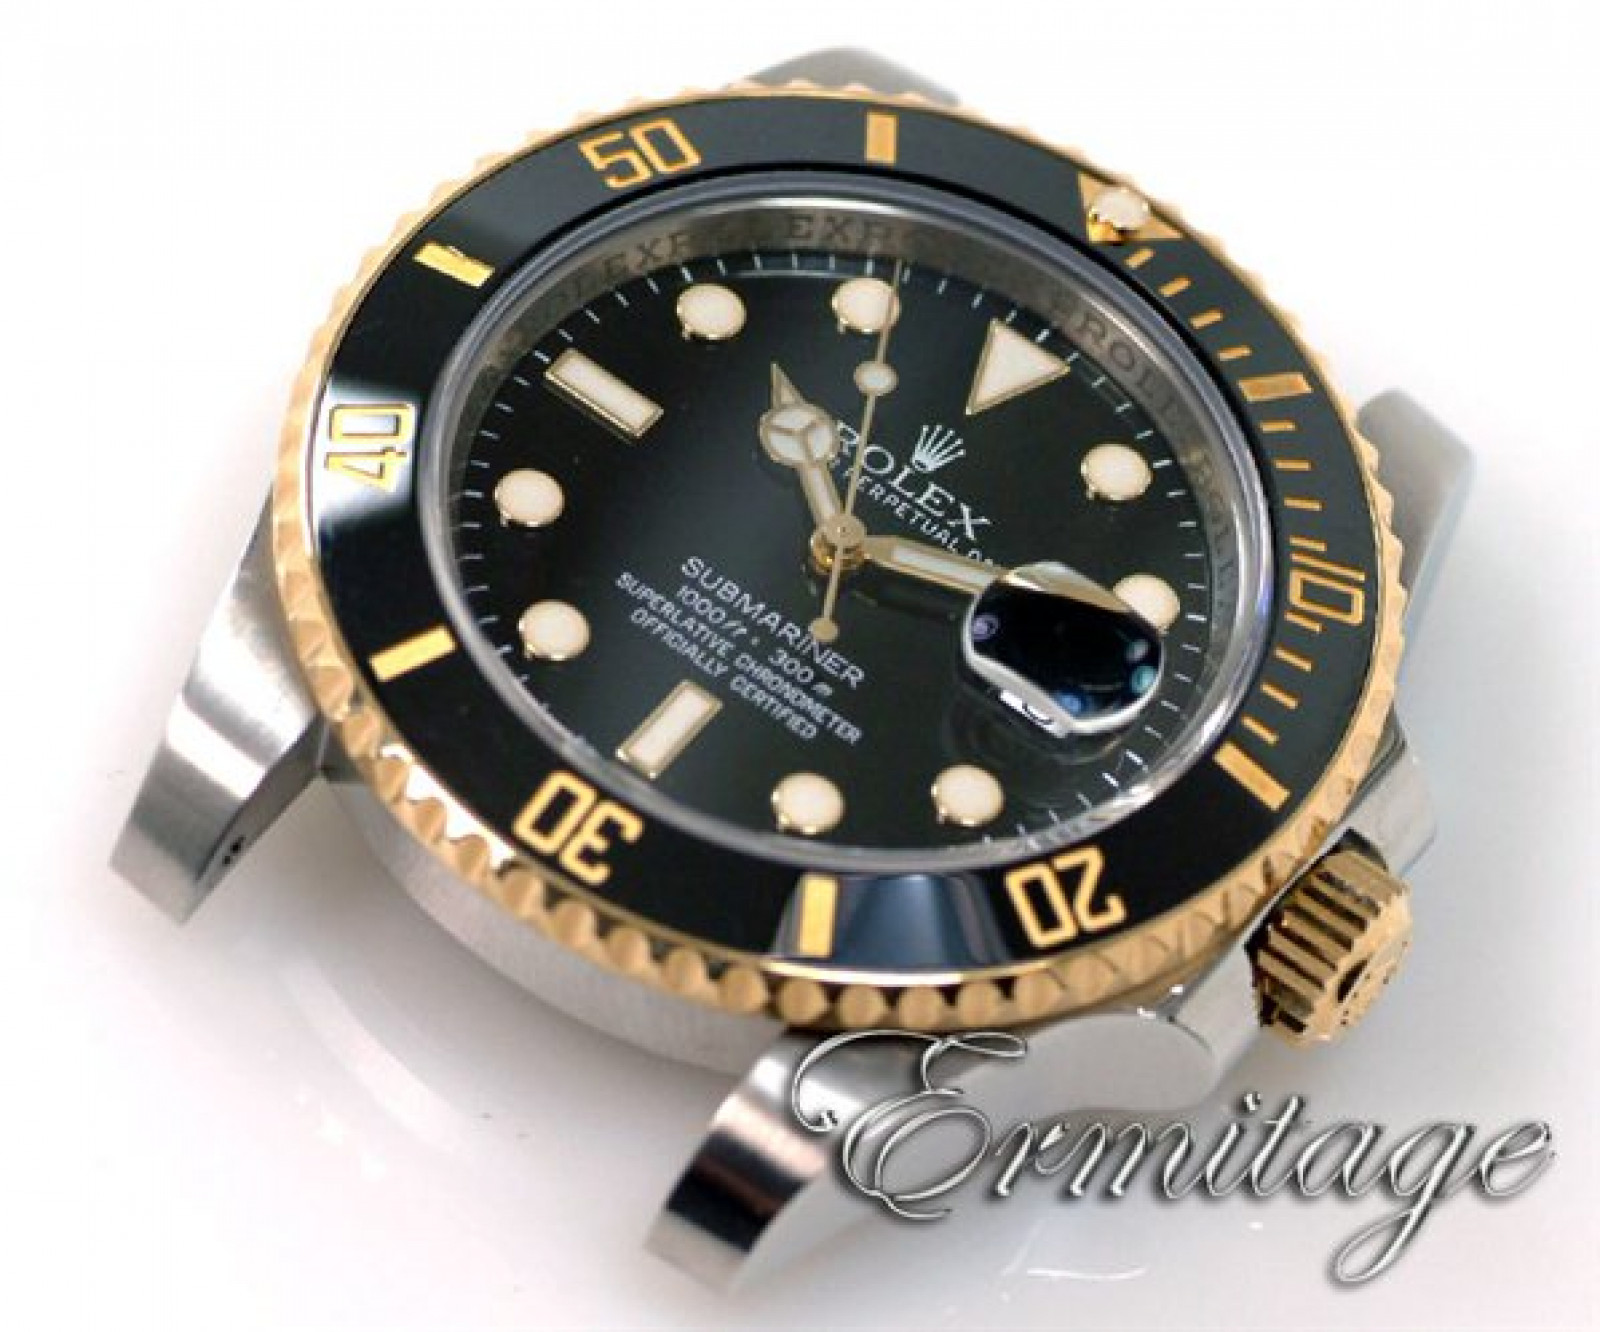 Rolex Submariner 116613 Gold & Steel Black 2012